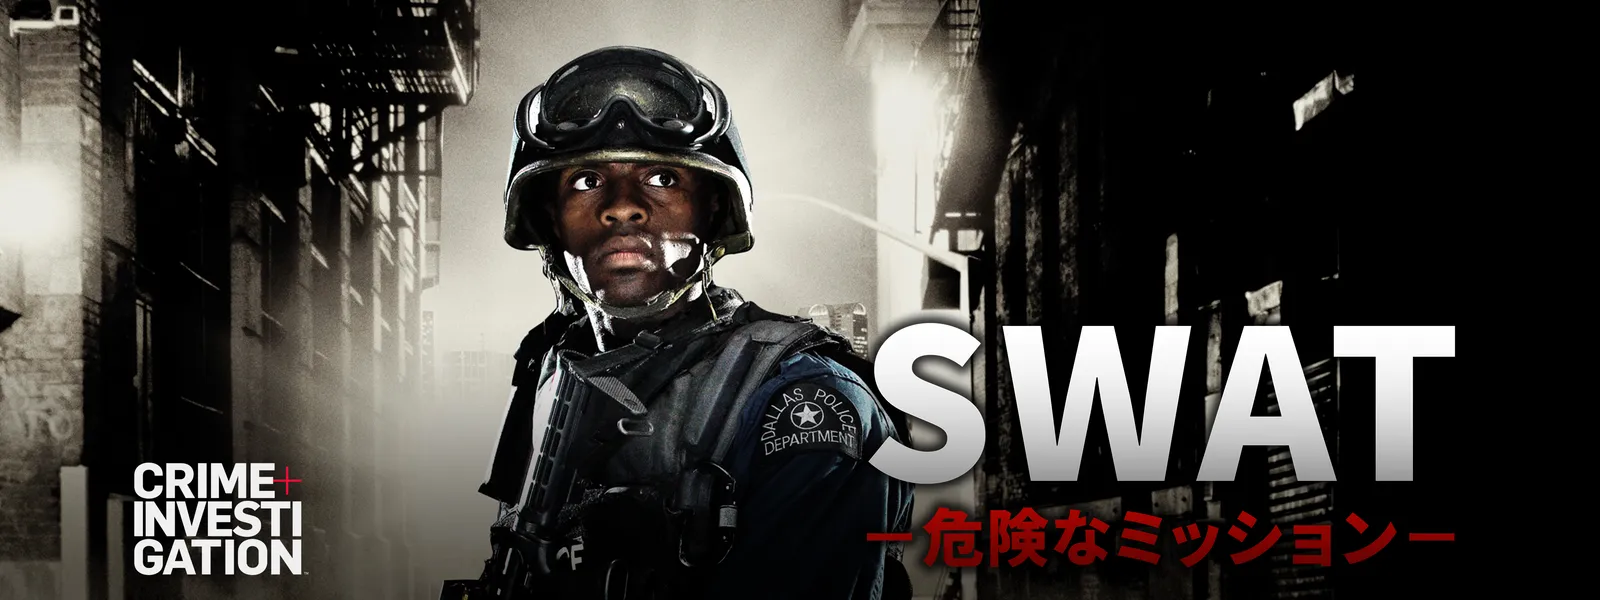 Swat 危険なミッション が見放題 Hulu フールー お試し無料